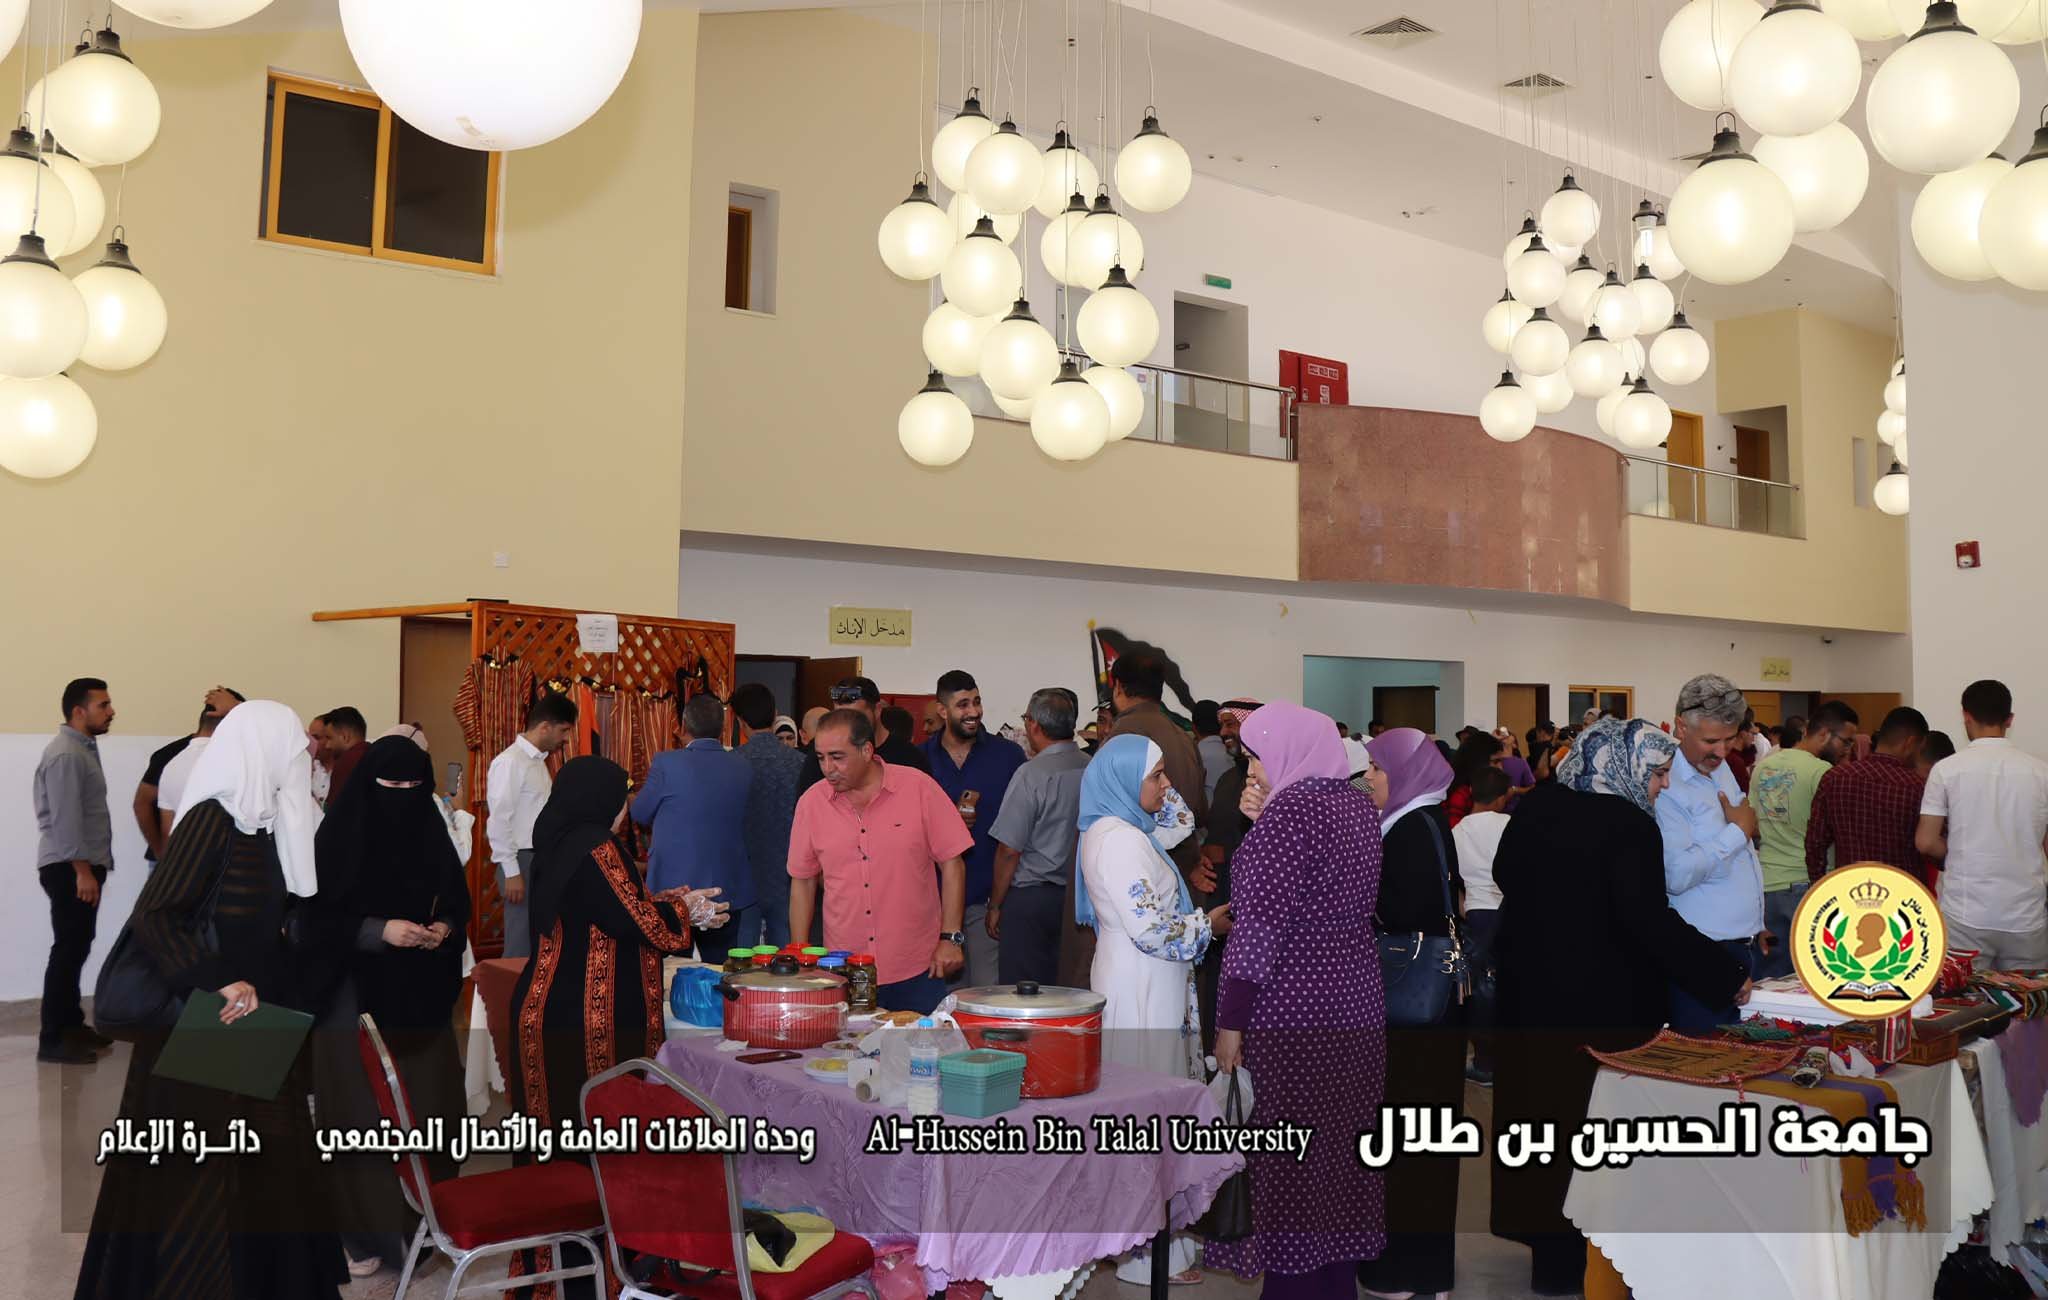 افتتاح معرض المدينة الوردية لتمكين المرأة الريفية في جامعة الحسين بن طلال.